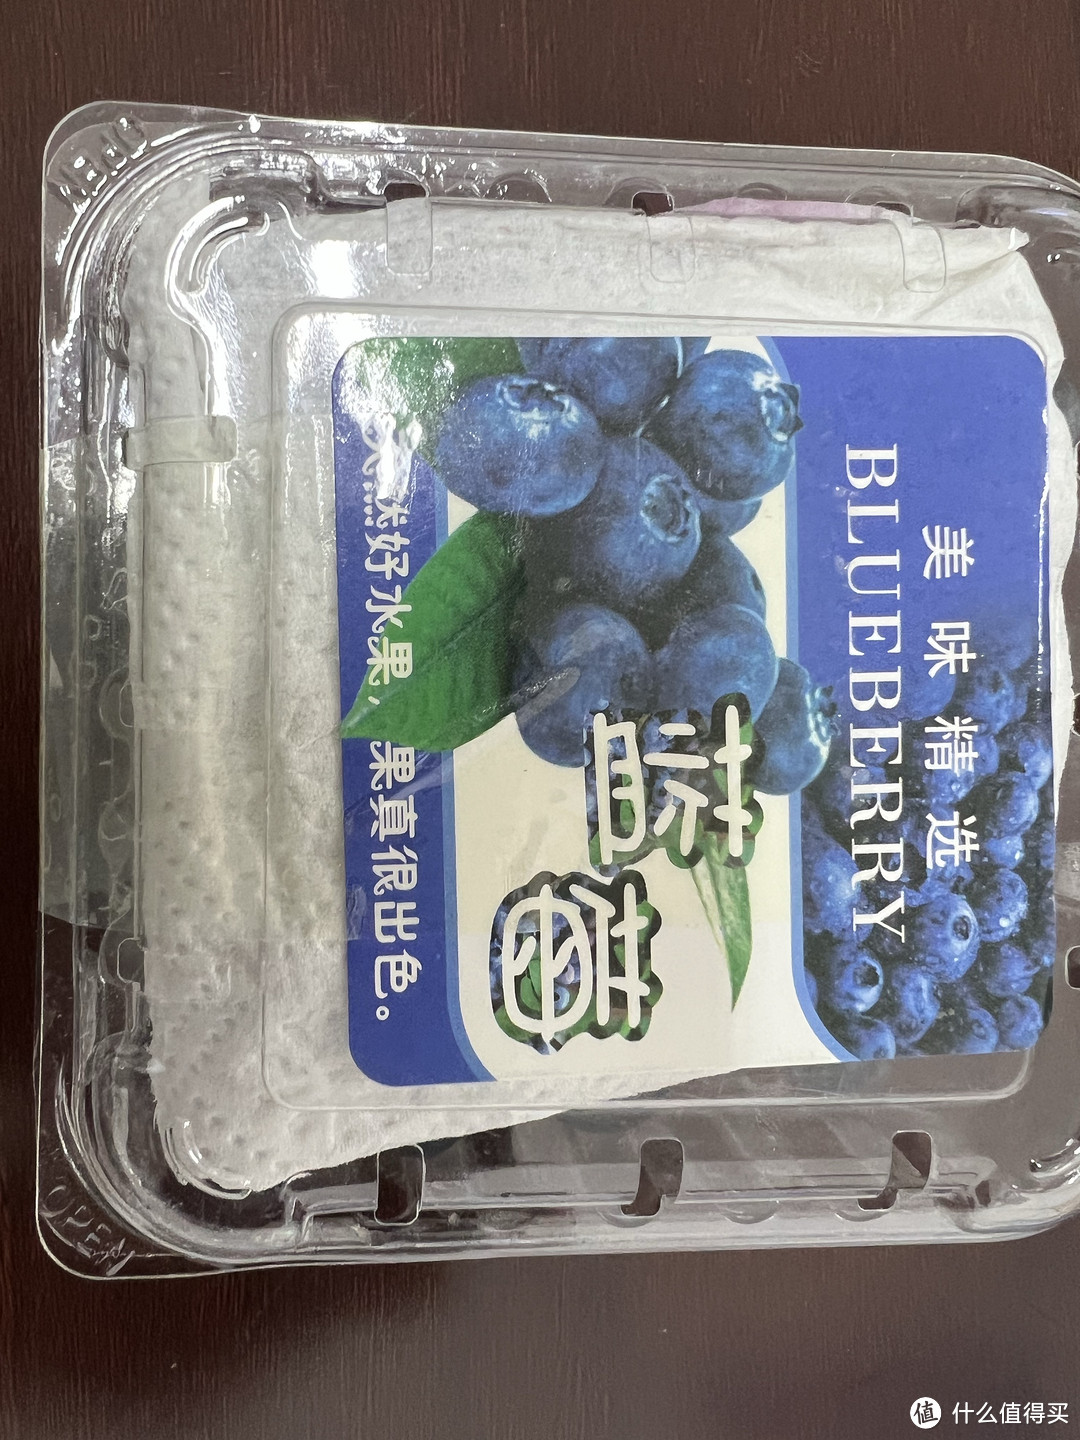 朋友送我的520礼物，竟然是云南蓝莓鲜果，哈哈哈！！！